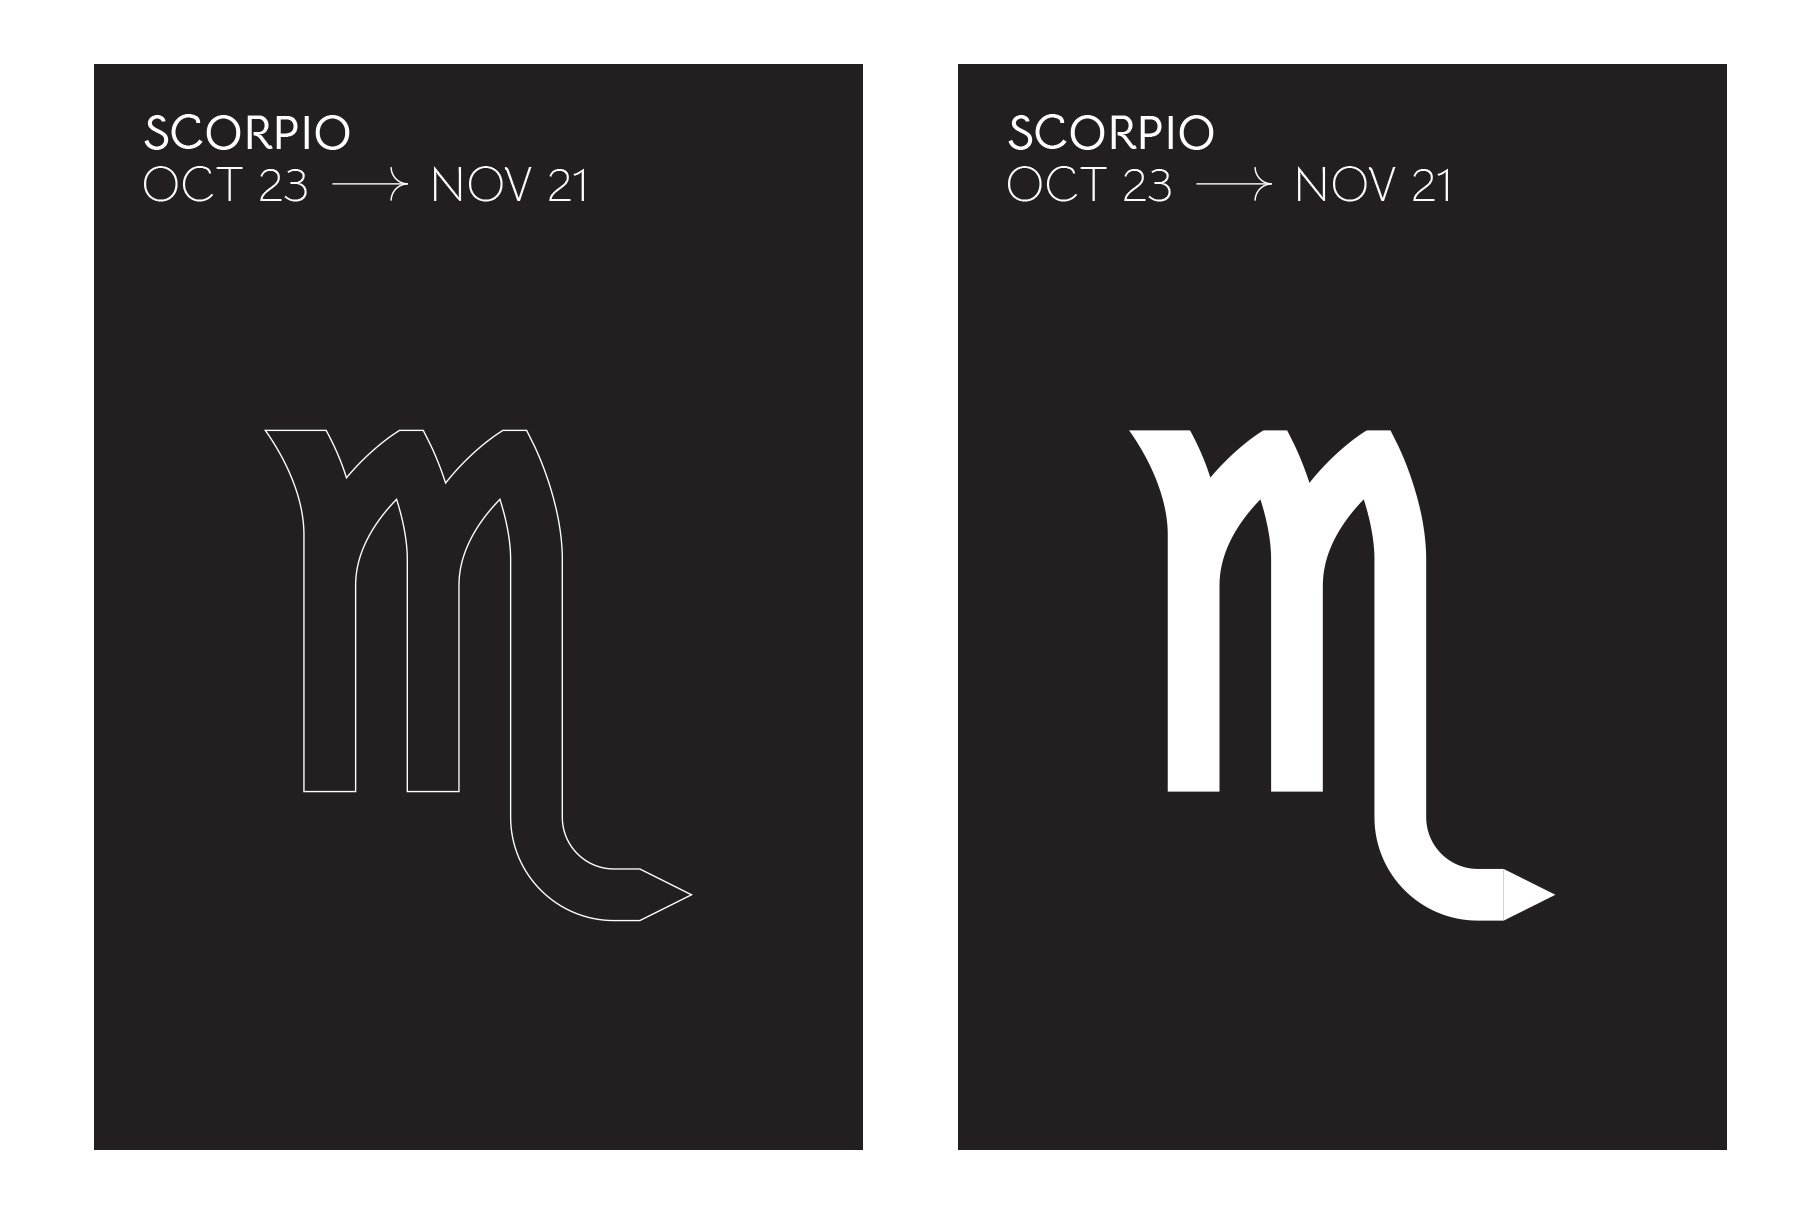 Outline and bold white Scorpio graphic.